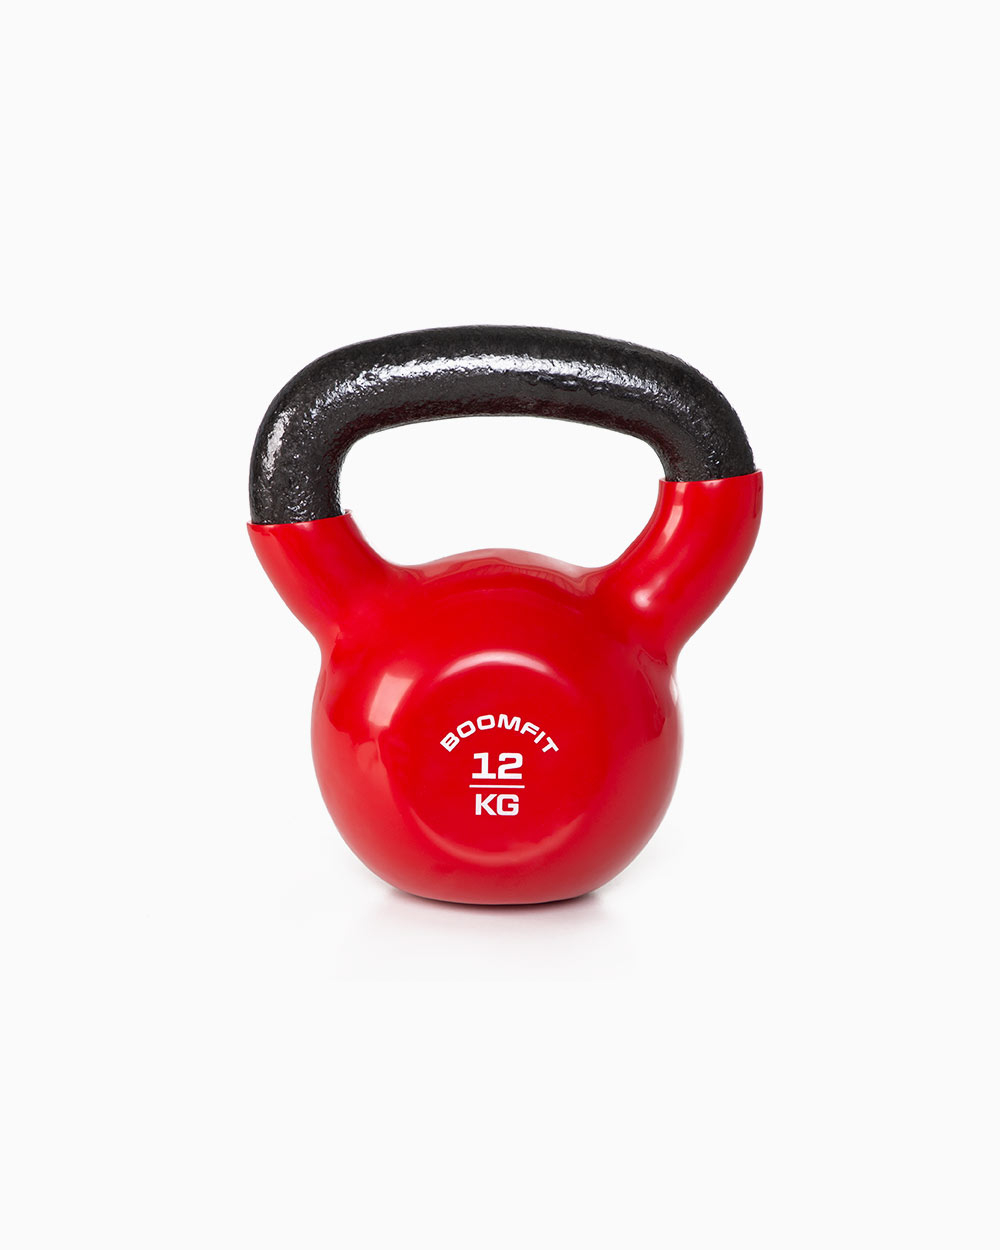 Vinyl Kettlebell Strength Weight Fitness Home Gym Workouts Kettlebells 2-12kg 